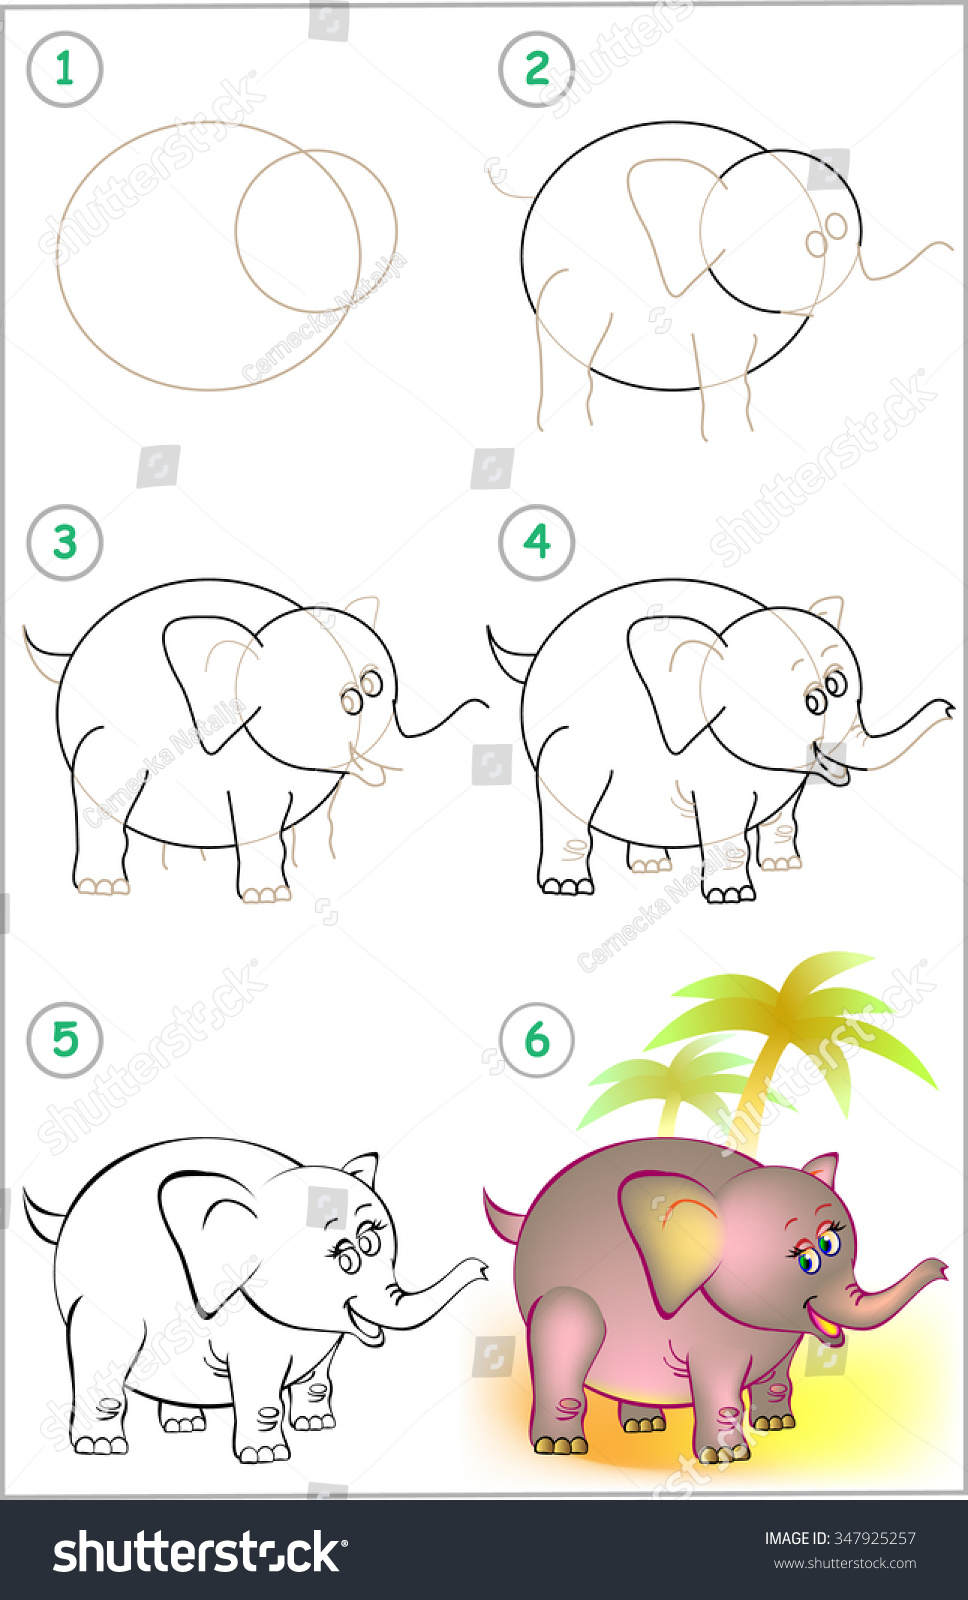 Рисование слона пошаговое для 4 лет